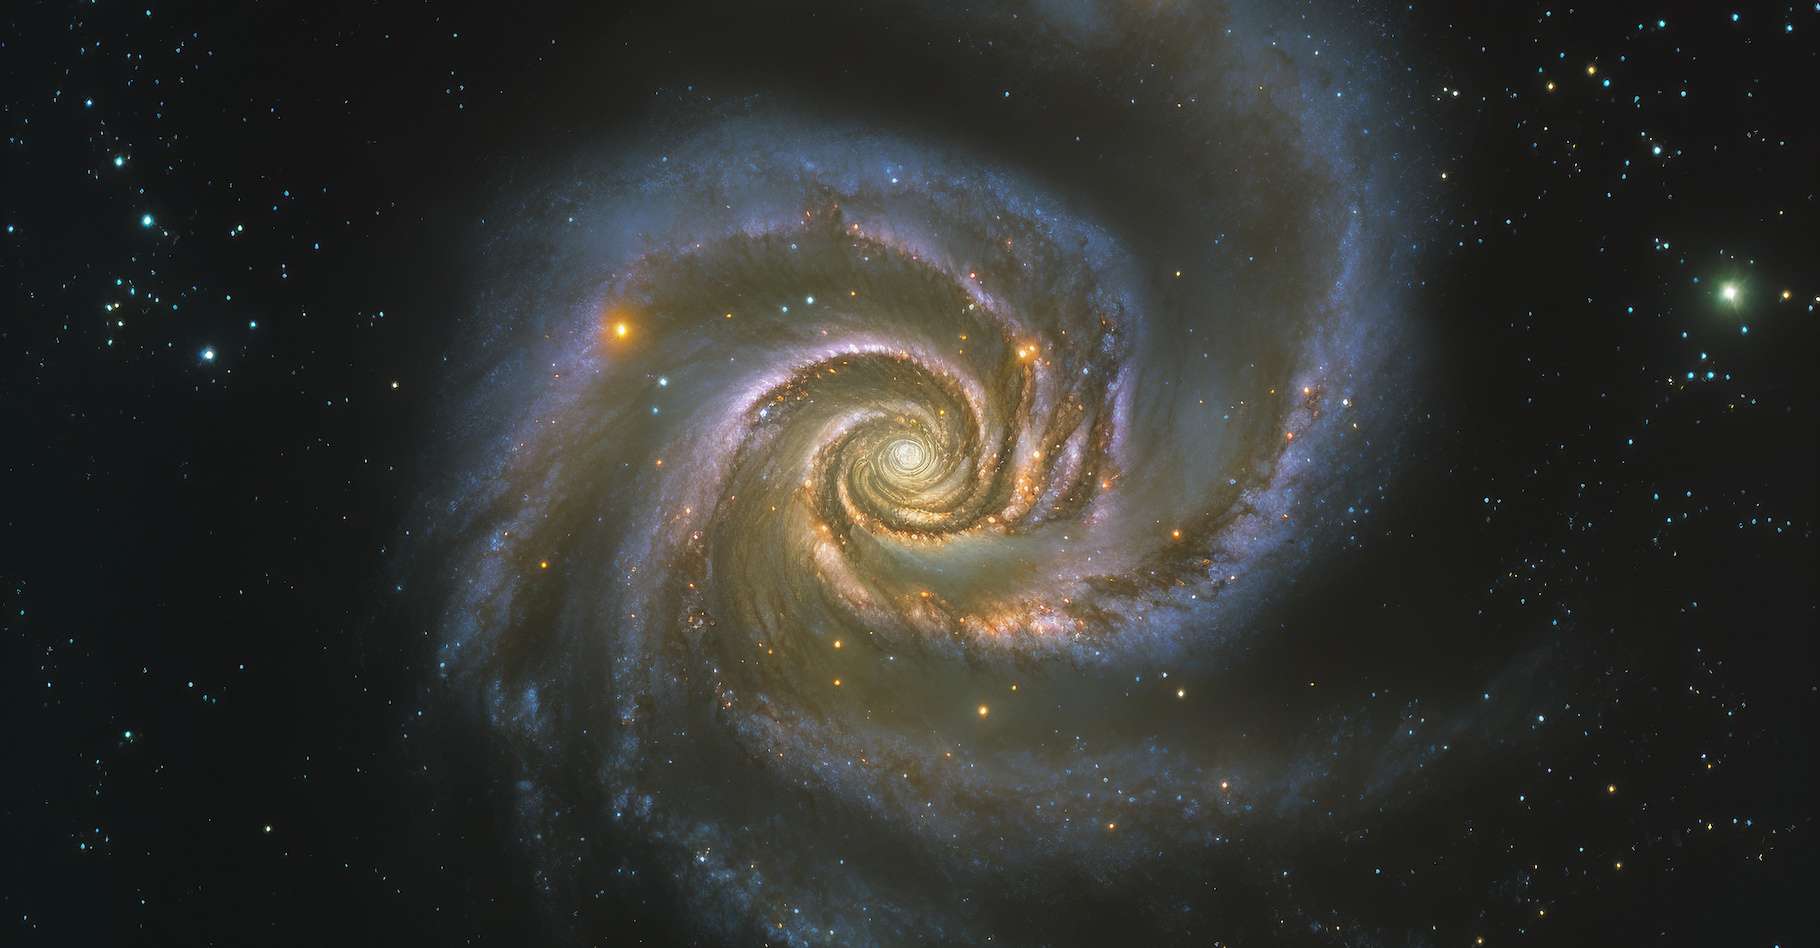 Obywatelscy astronomowie publikują swoje odkrycia dotyczące supernowej zaobserwowanej w Wielkim Wozie